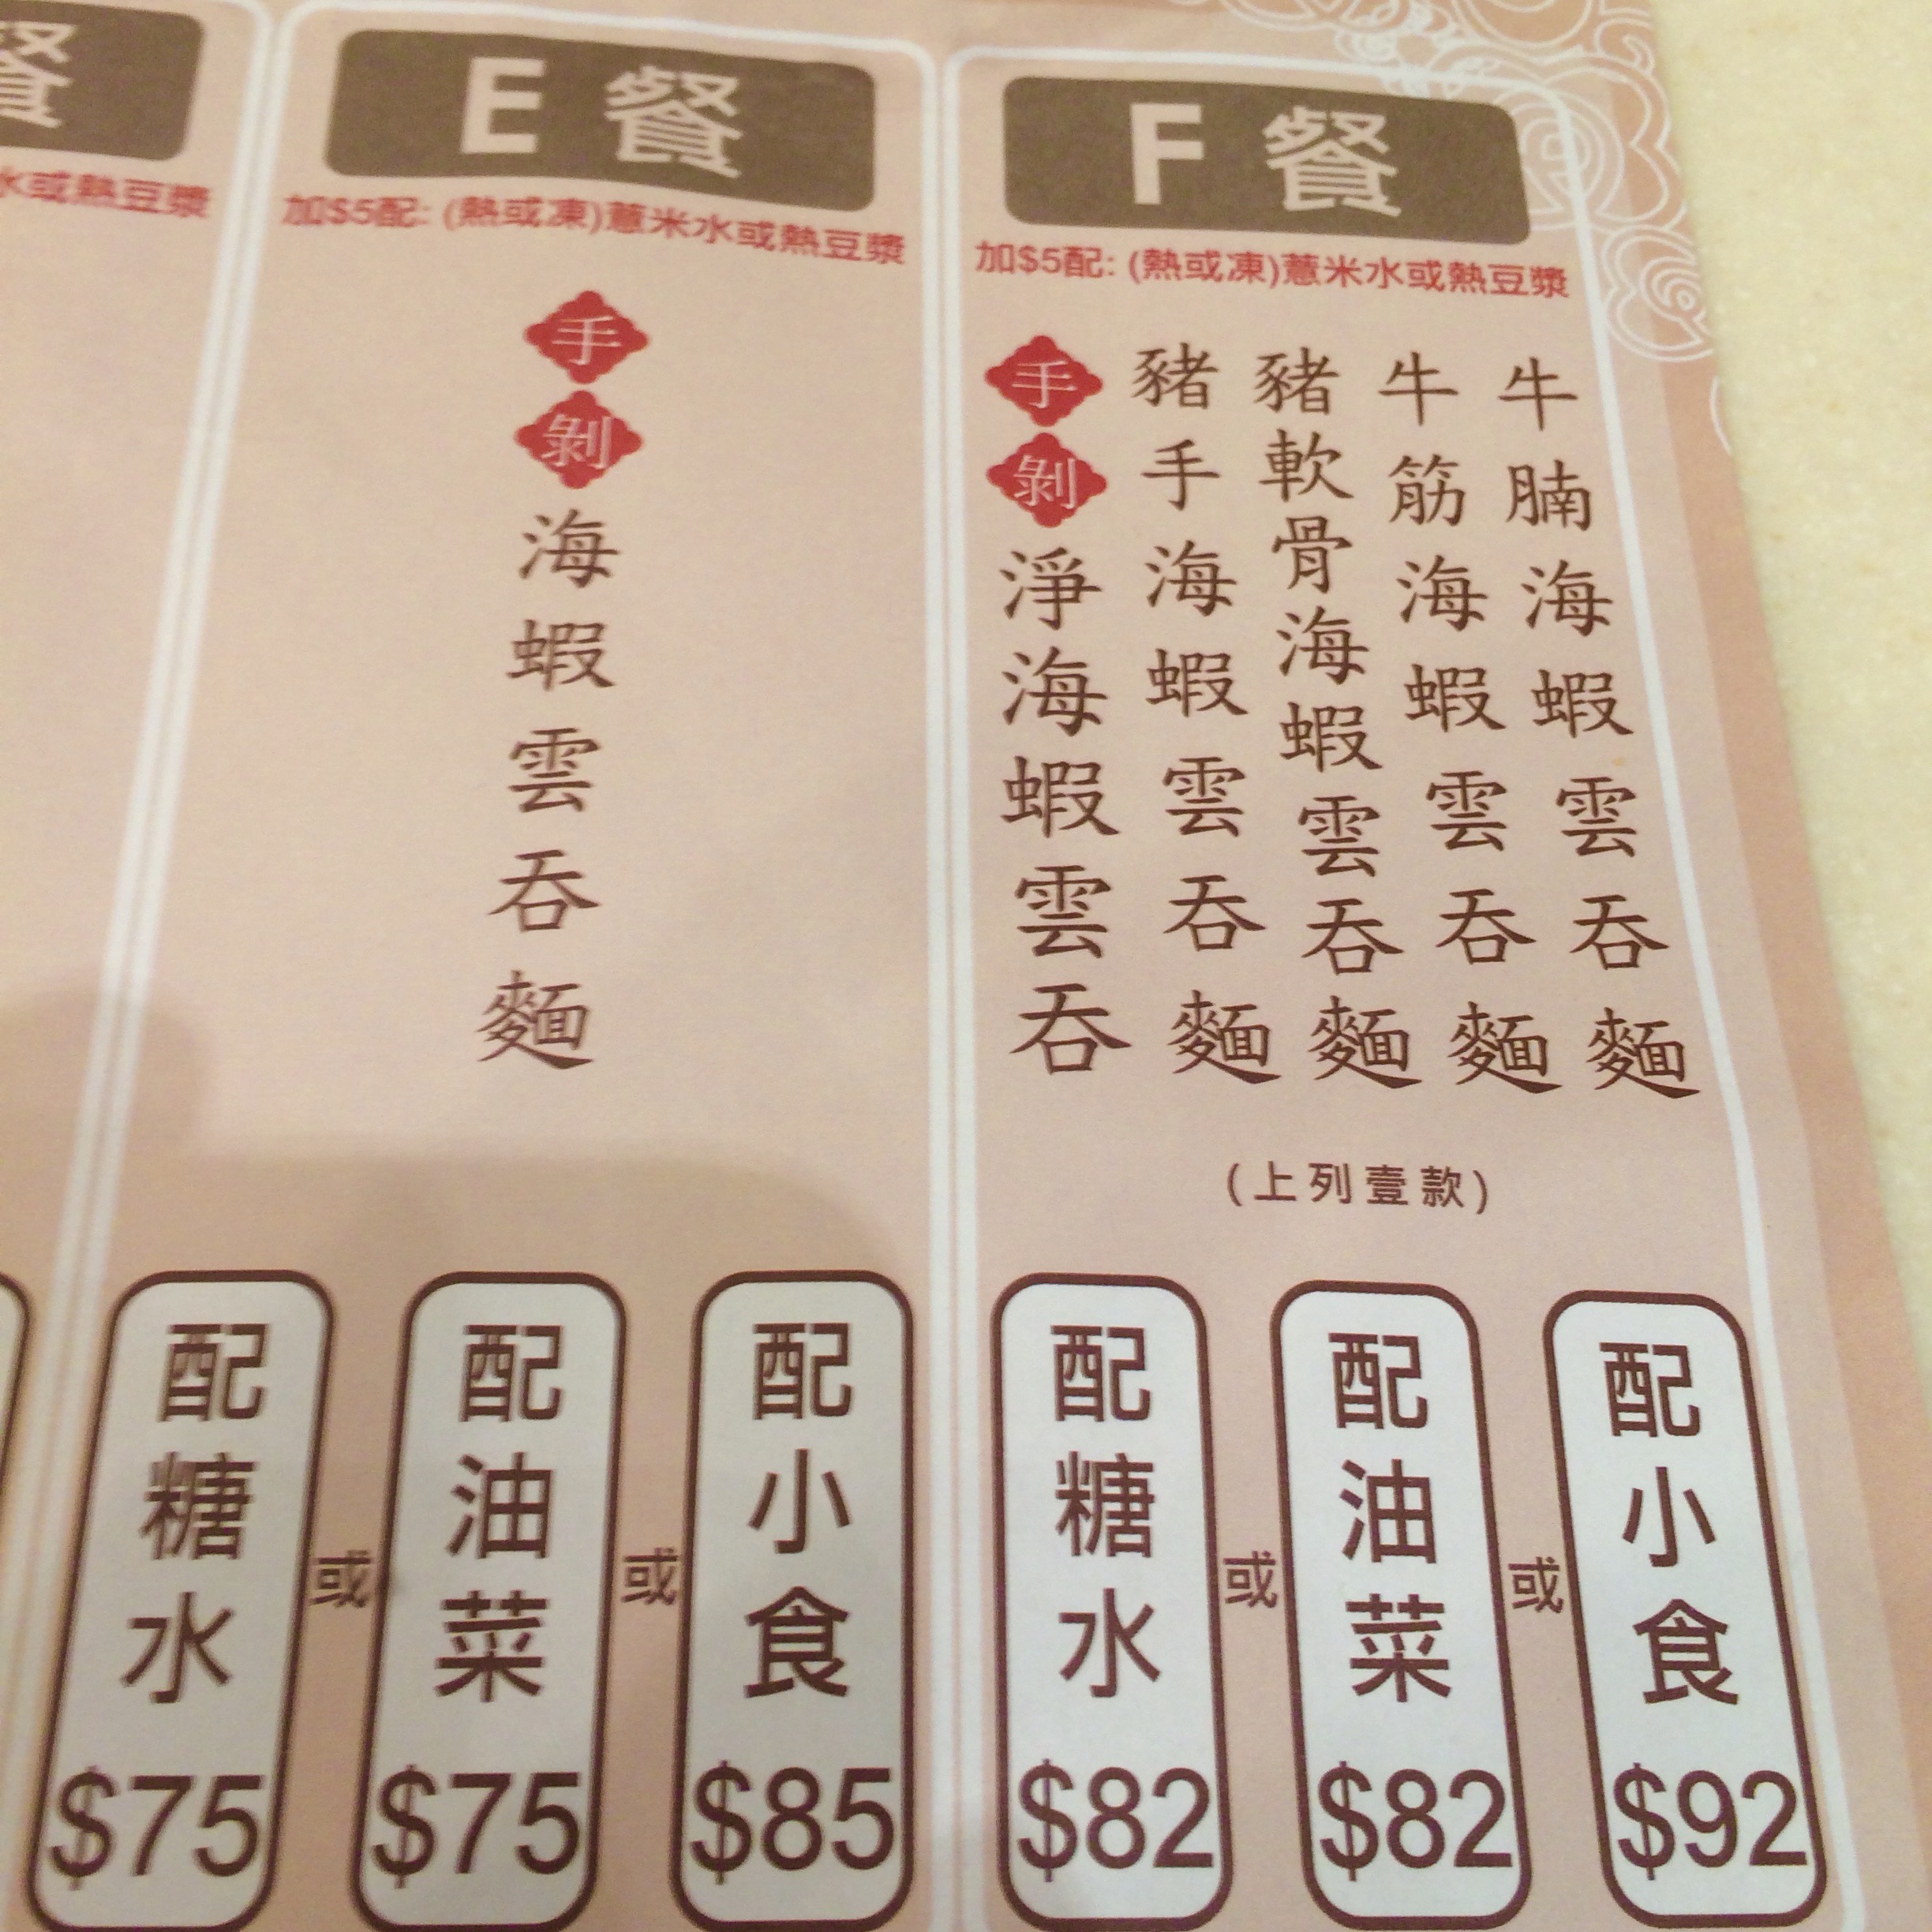 香港で人気のワンタン麺-池記雲呑麺のメニュー-4